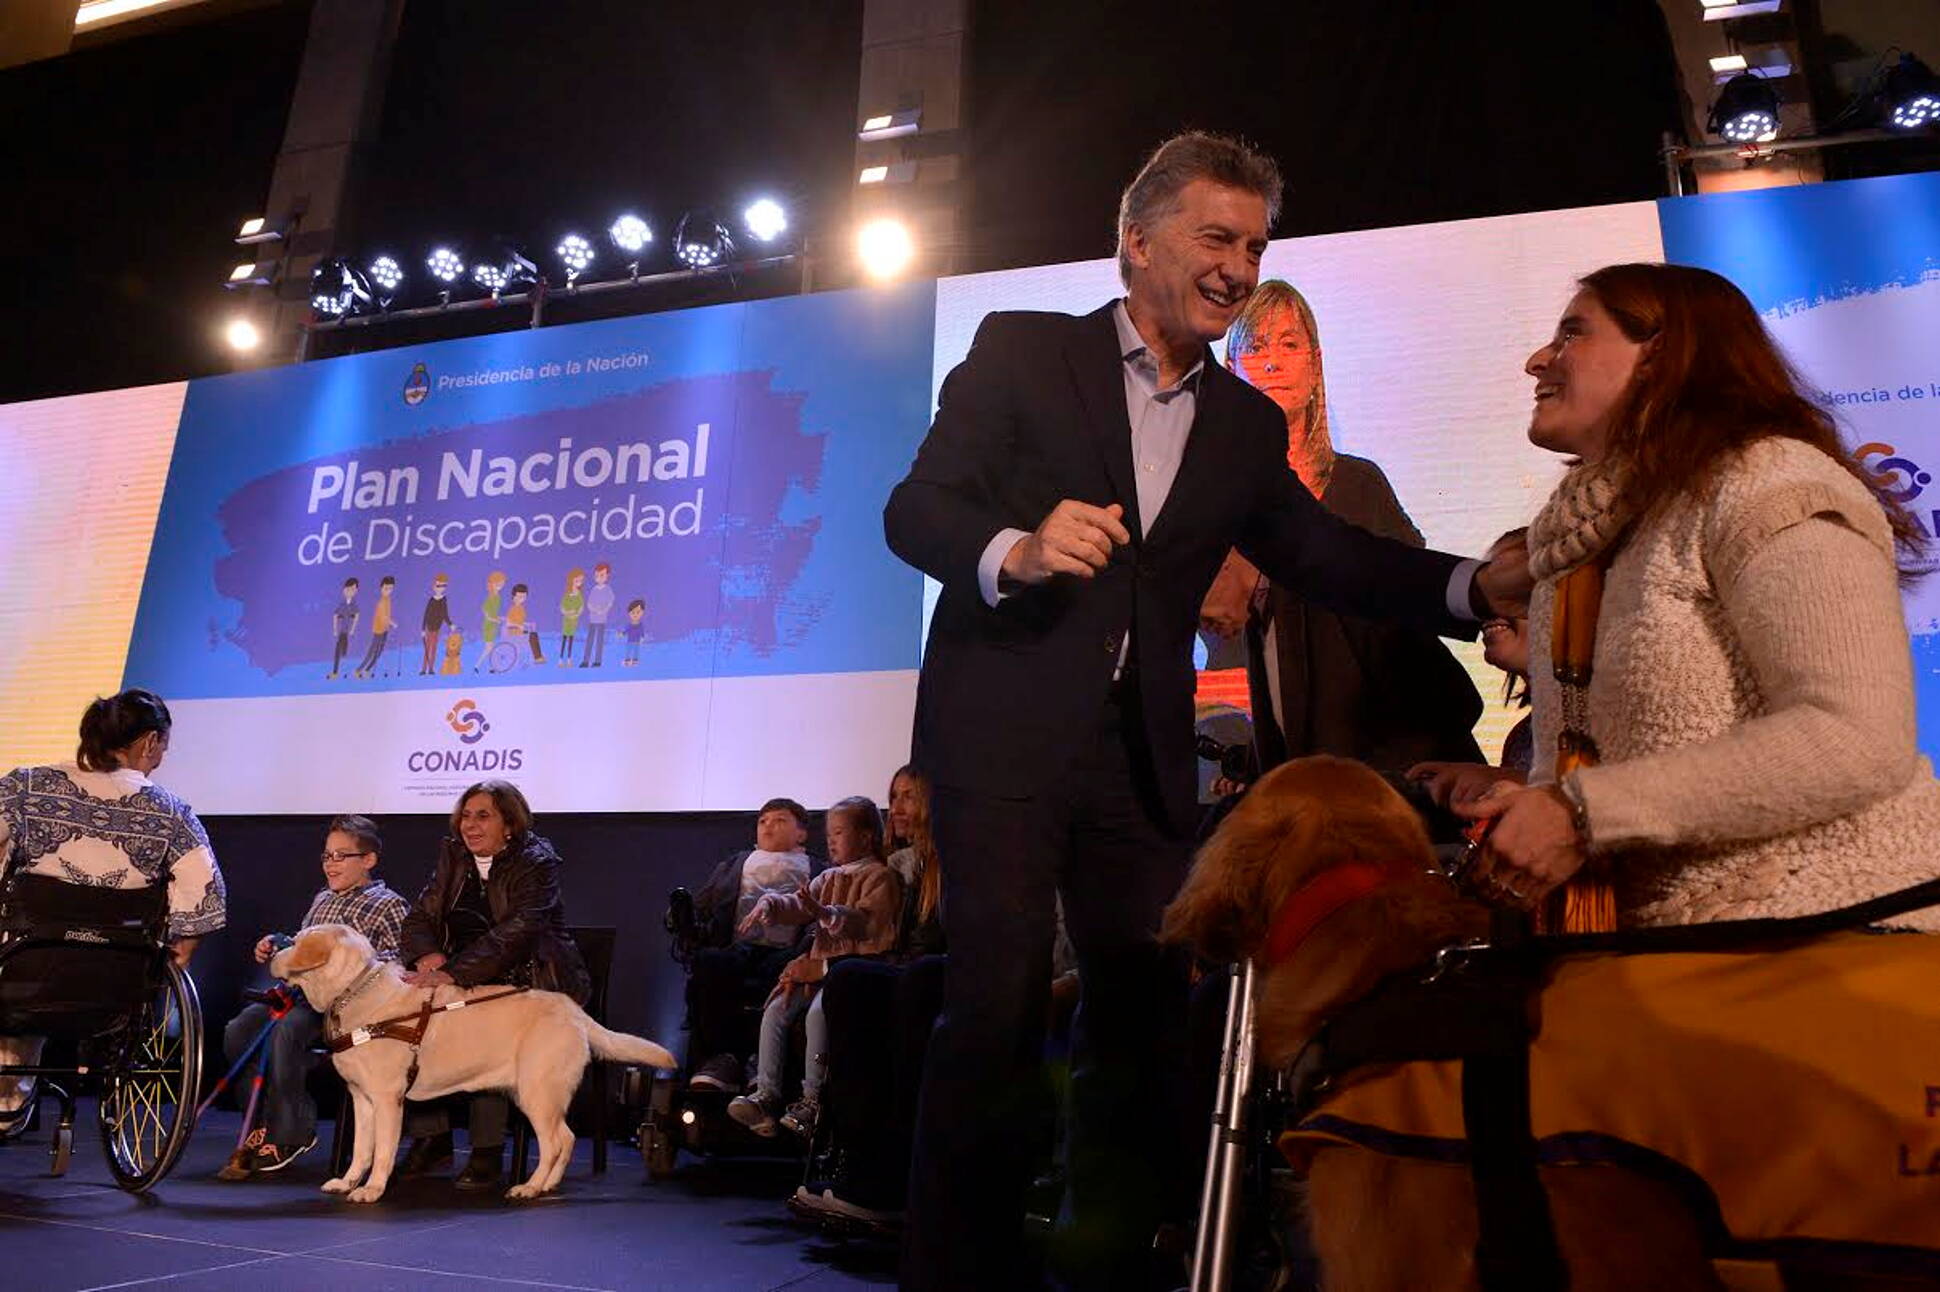 El presidente Macri presentó el Plan Nacional de Discapacidad